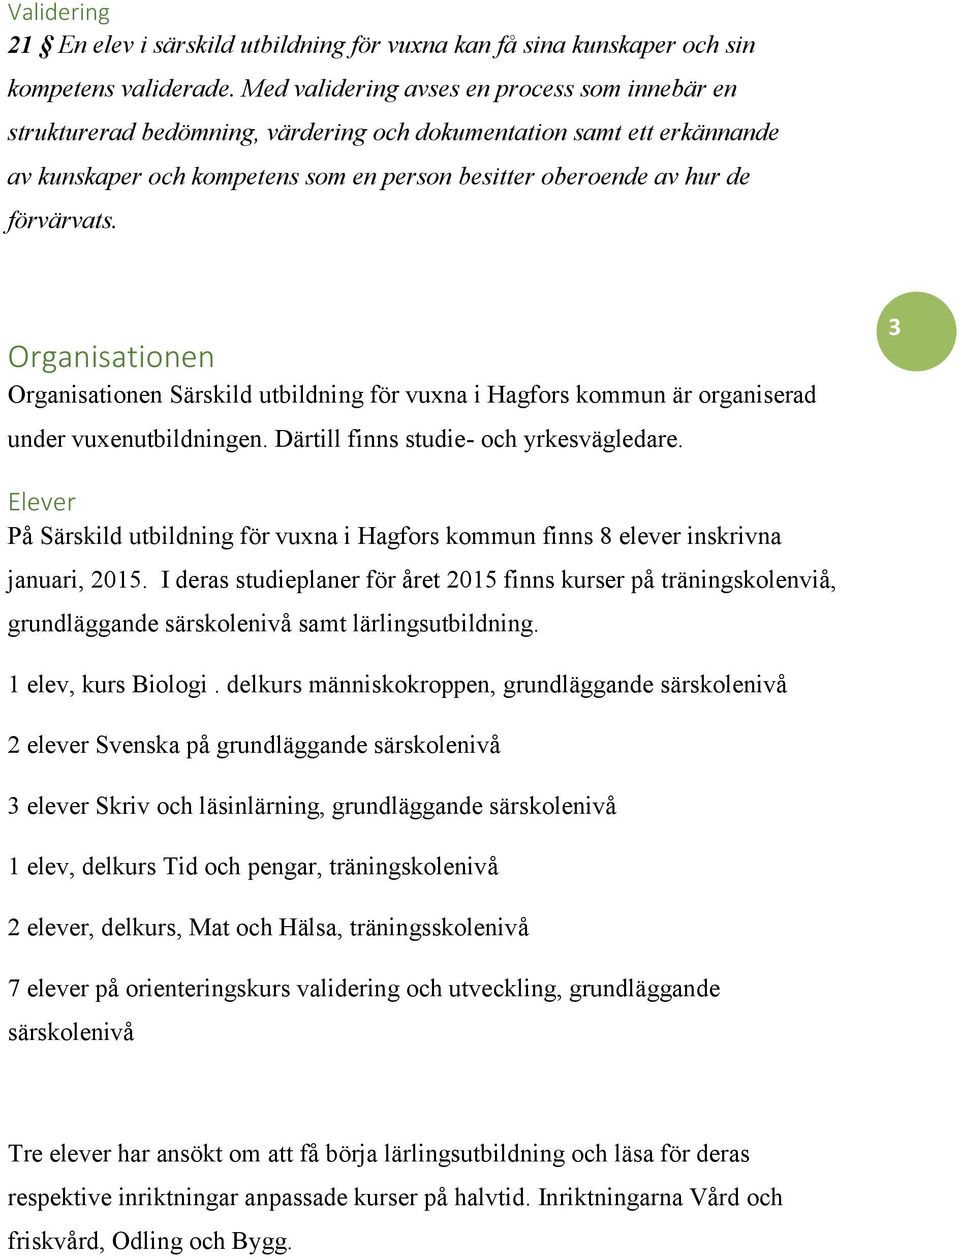 Organisationen Organisationen Särskild utbildning för vuxna i Hagfors kommun är organiserad under vuxenutbildningen. Därtill finns studie- och yrkesvägledare.